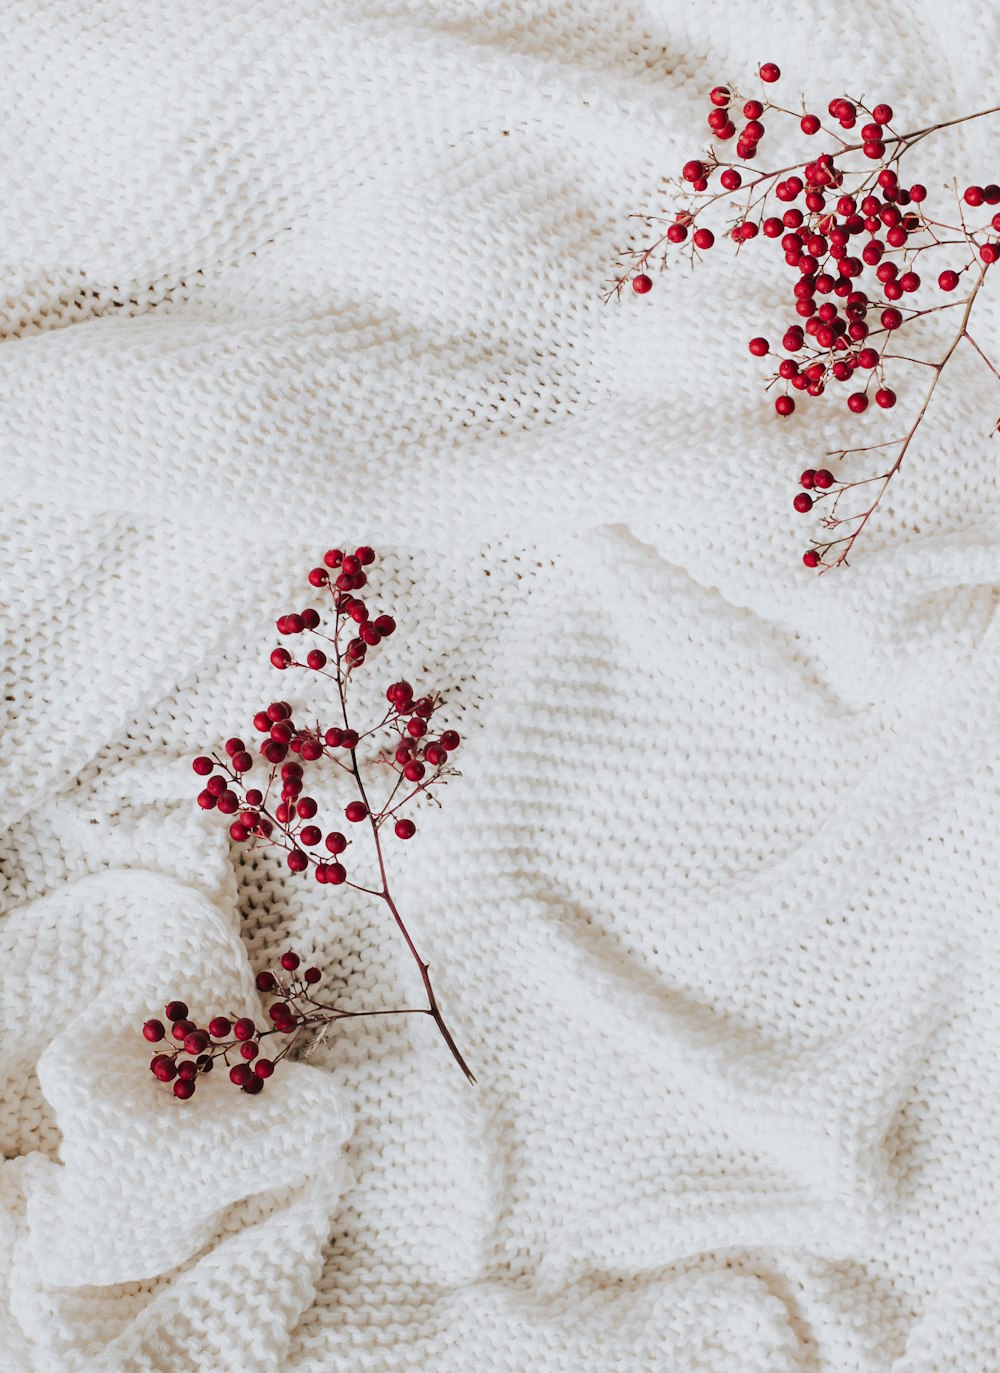 Textil floral blanco y rojo